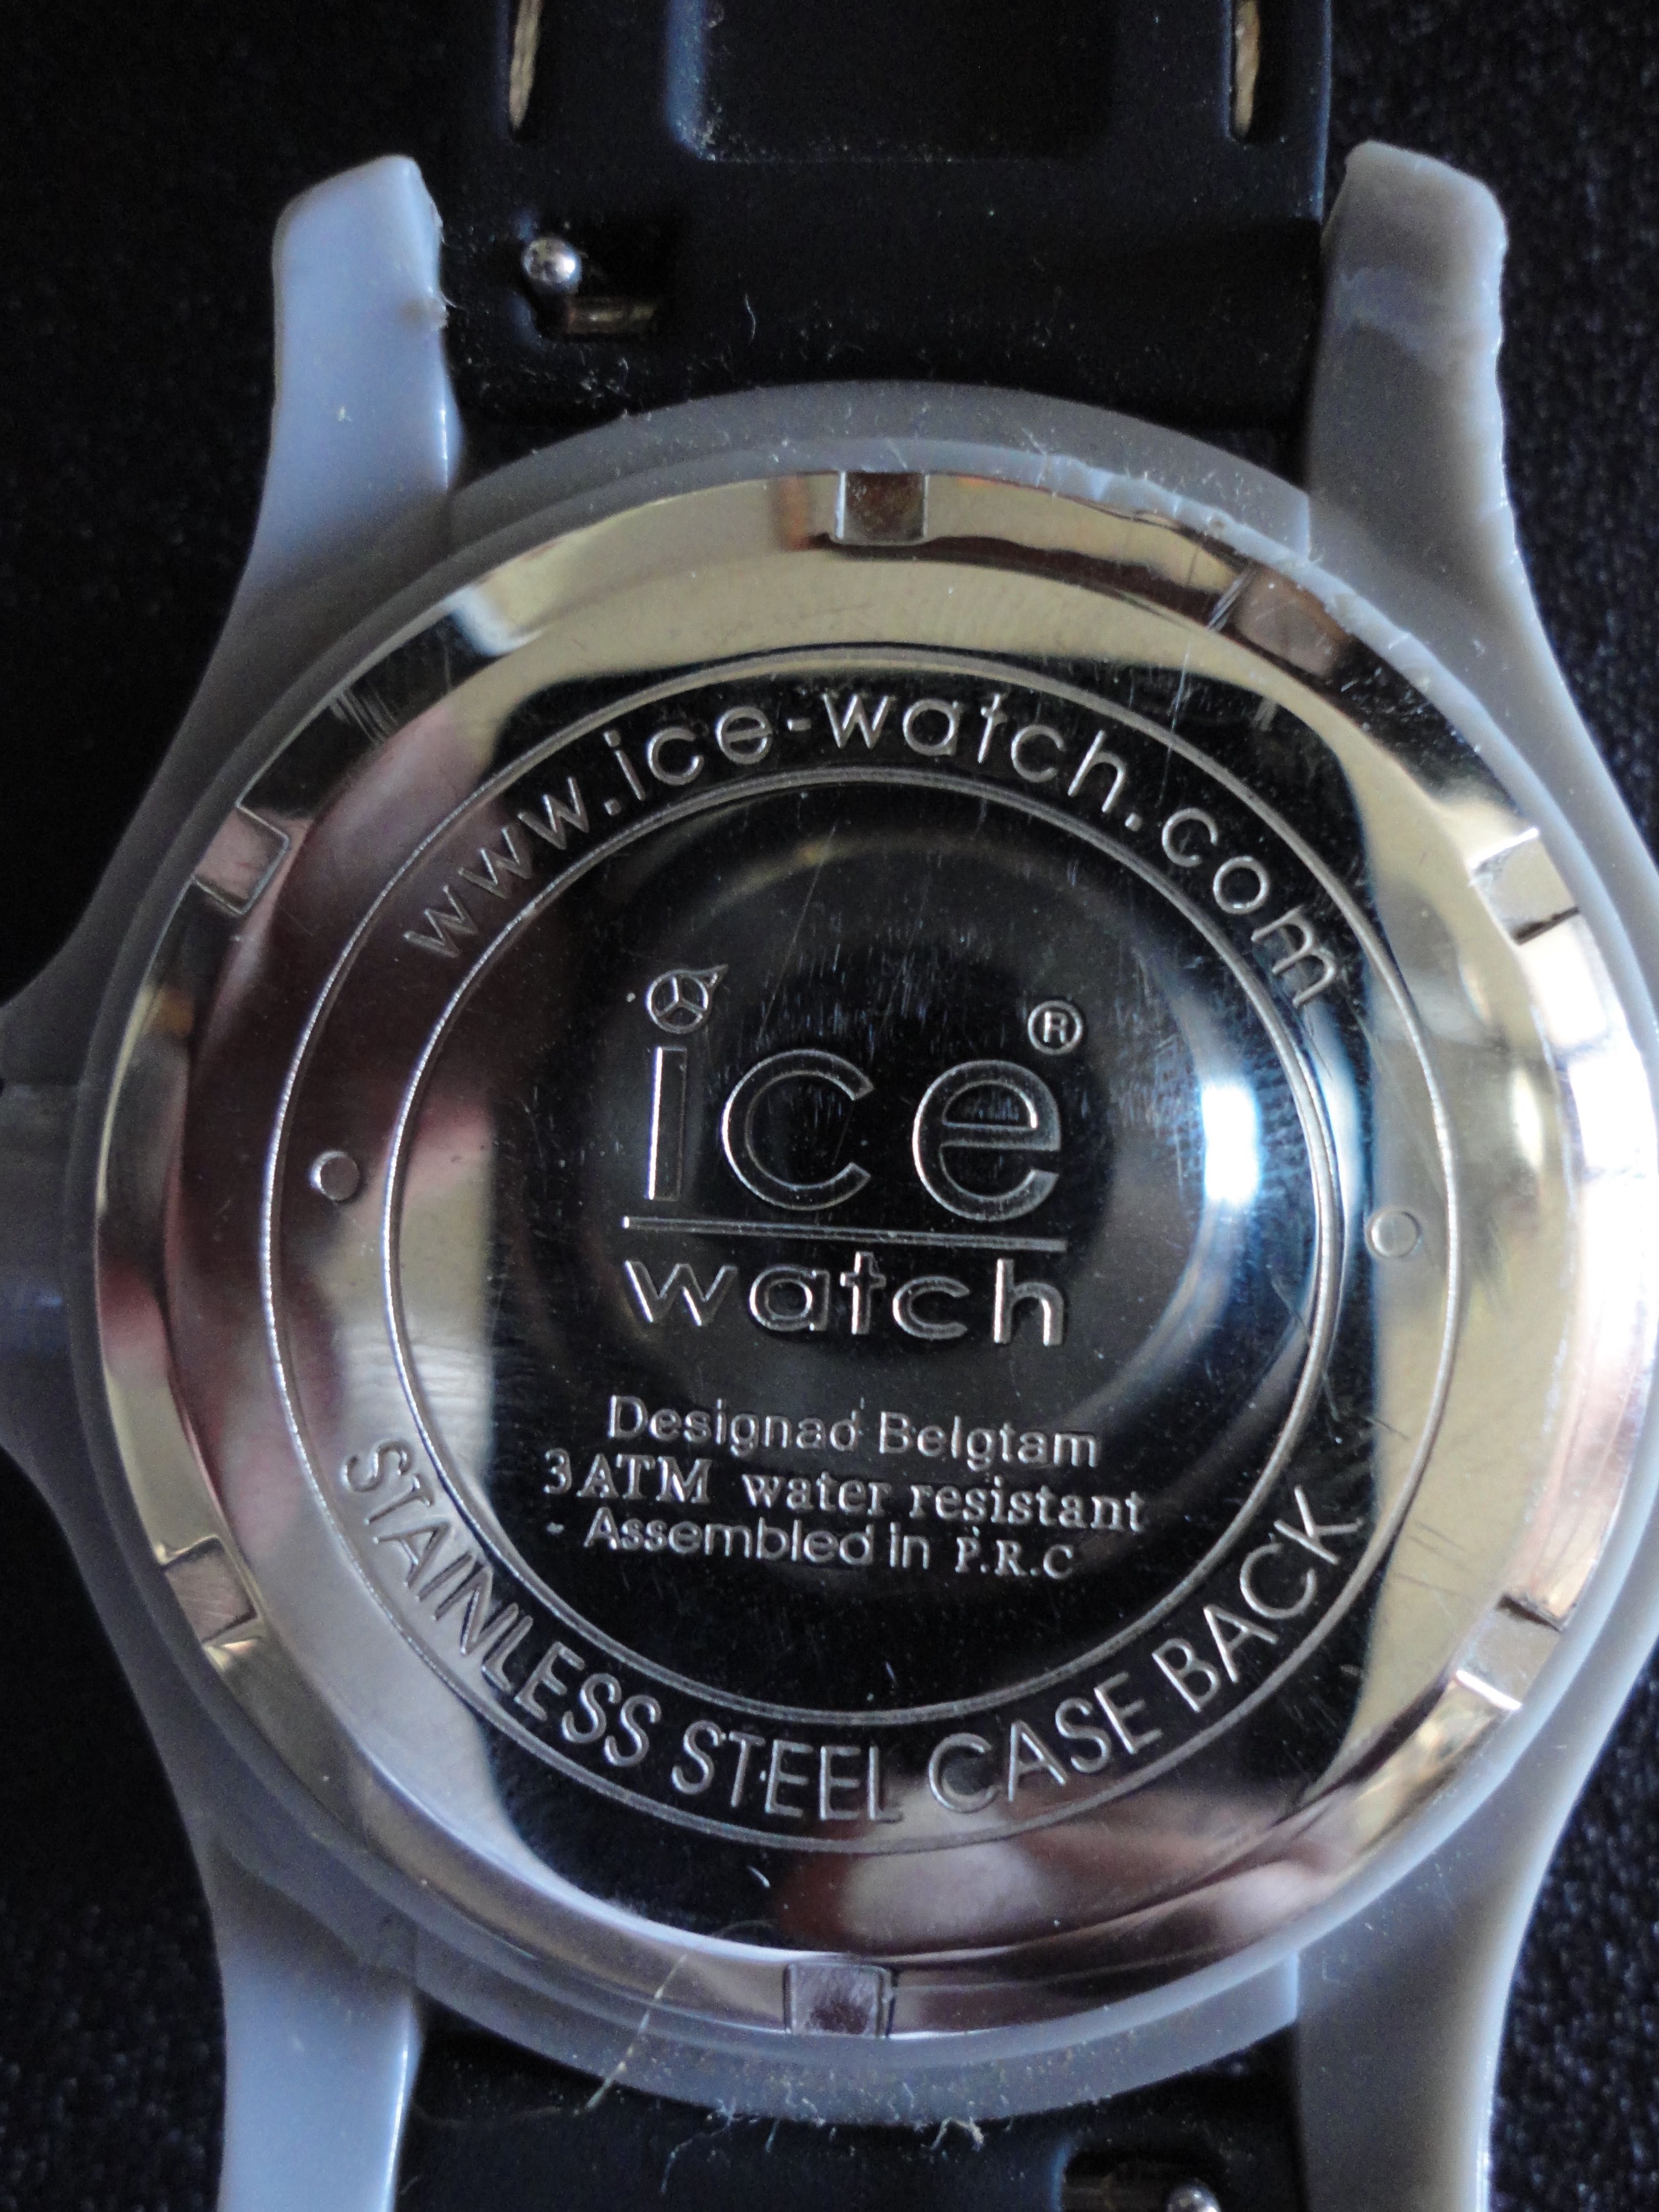 Relógio Ice Watch camuflado Army collection IABKXLR11